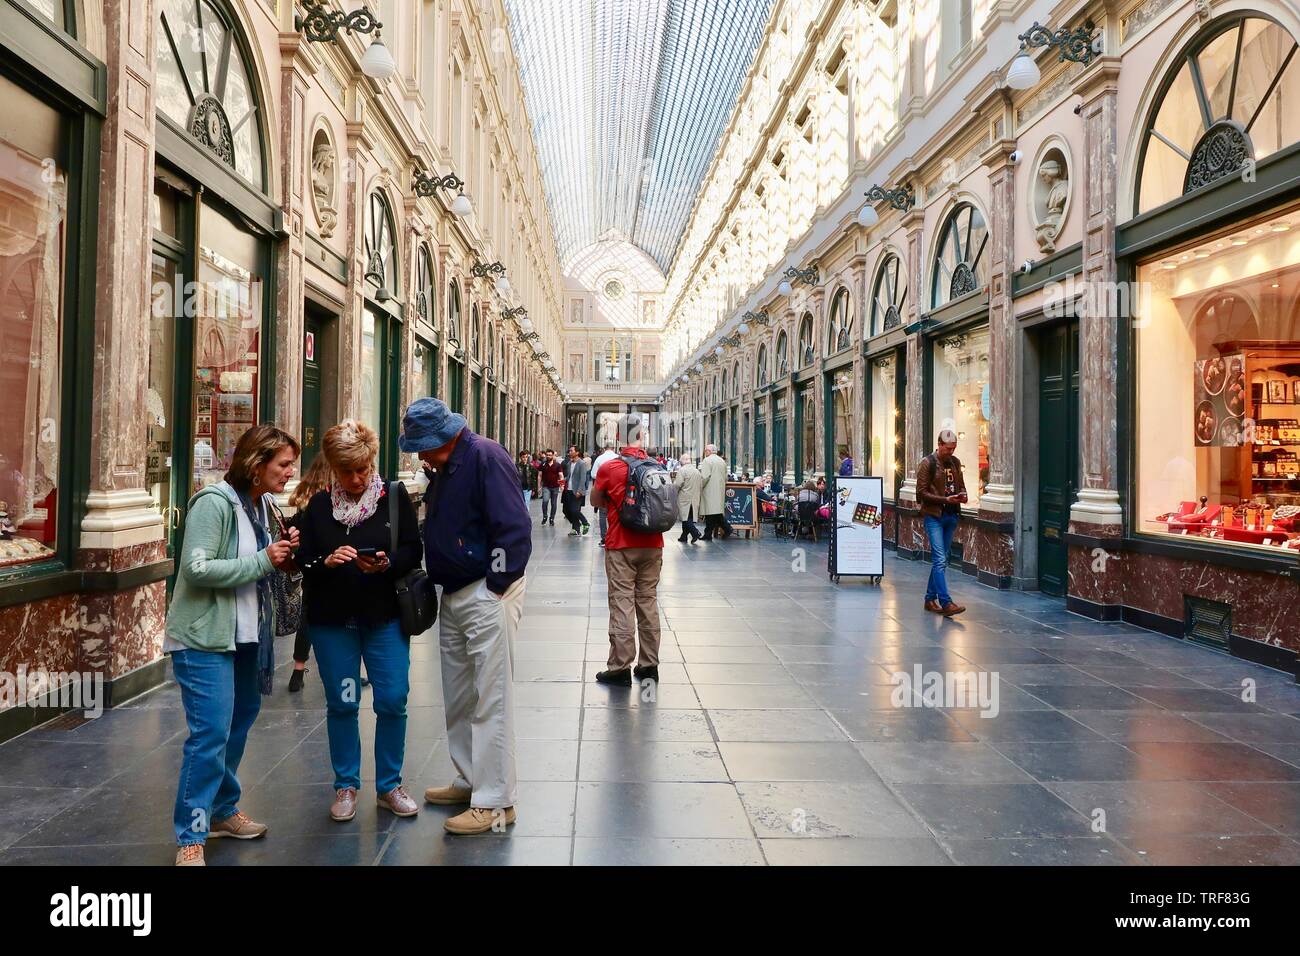 Bruselas, Bélgica - Mayo de 2019: St Hubert galerías Royal shopping mall. Foto de stock